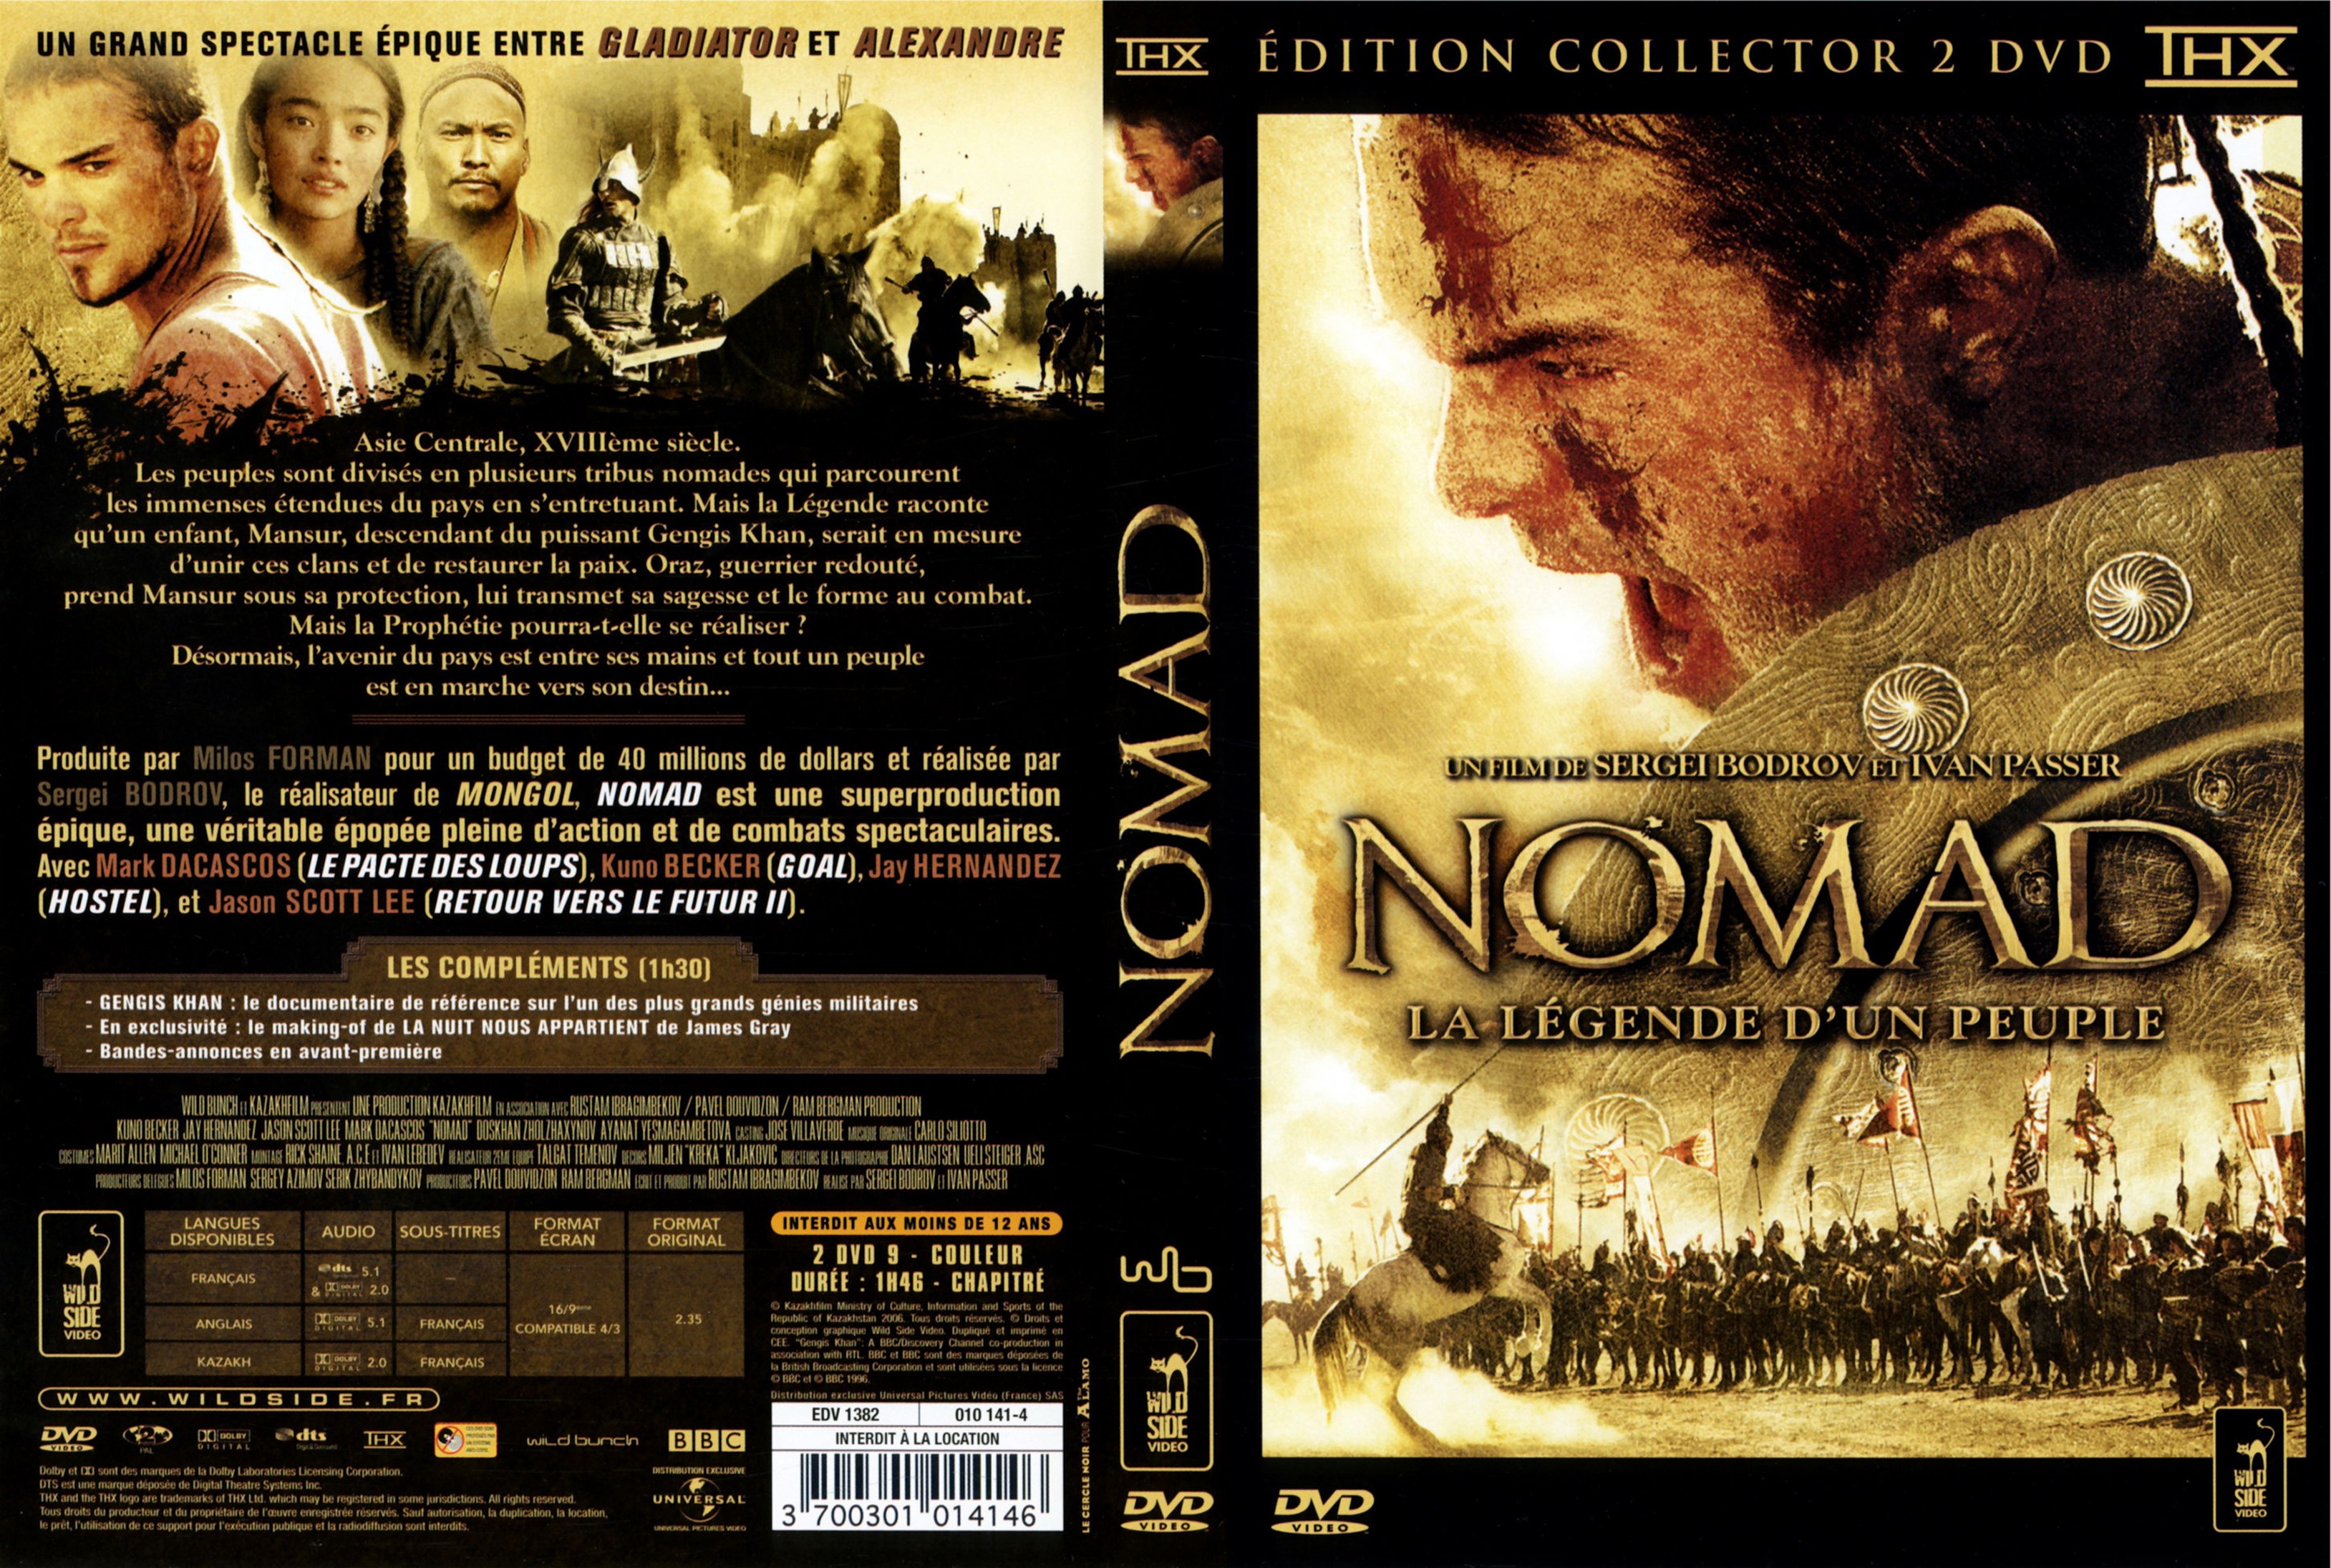 Jaquette DVD Nomad v2